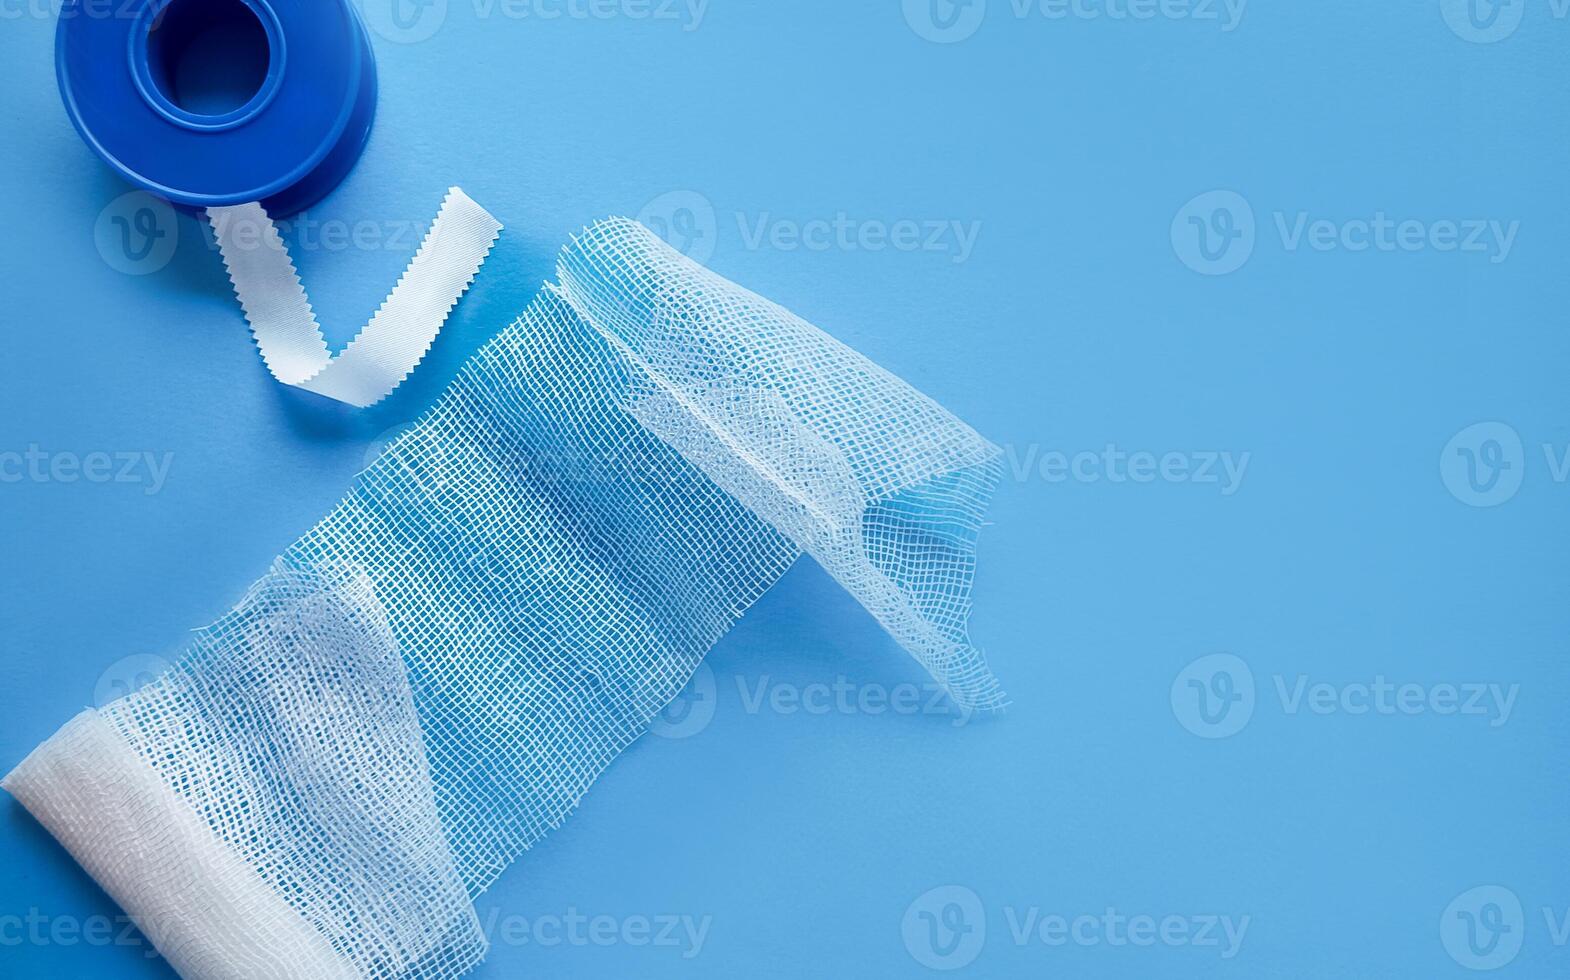 Unraveled Medical Bandage on Solid Blue Background photo